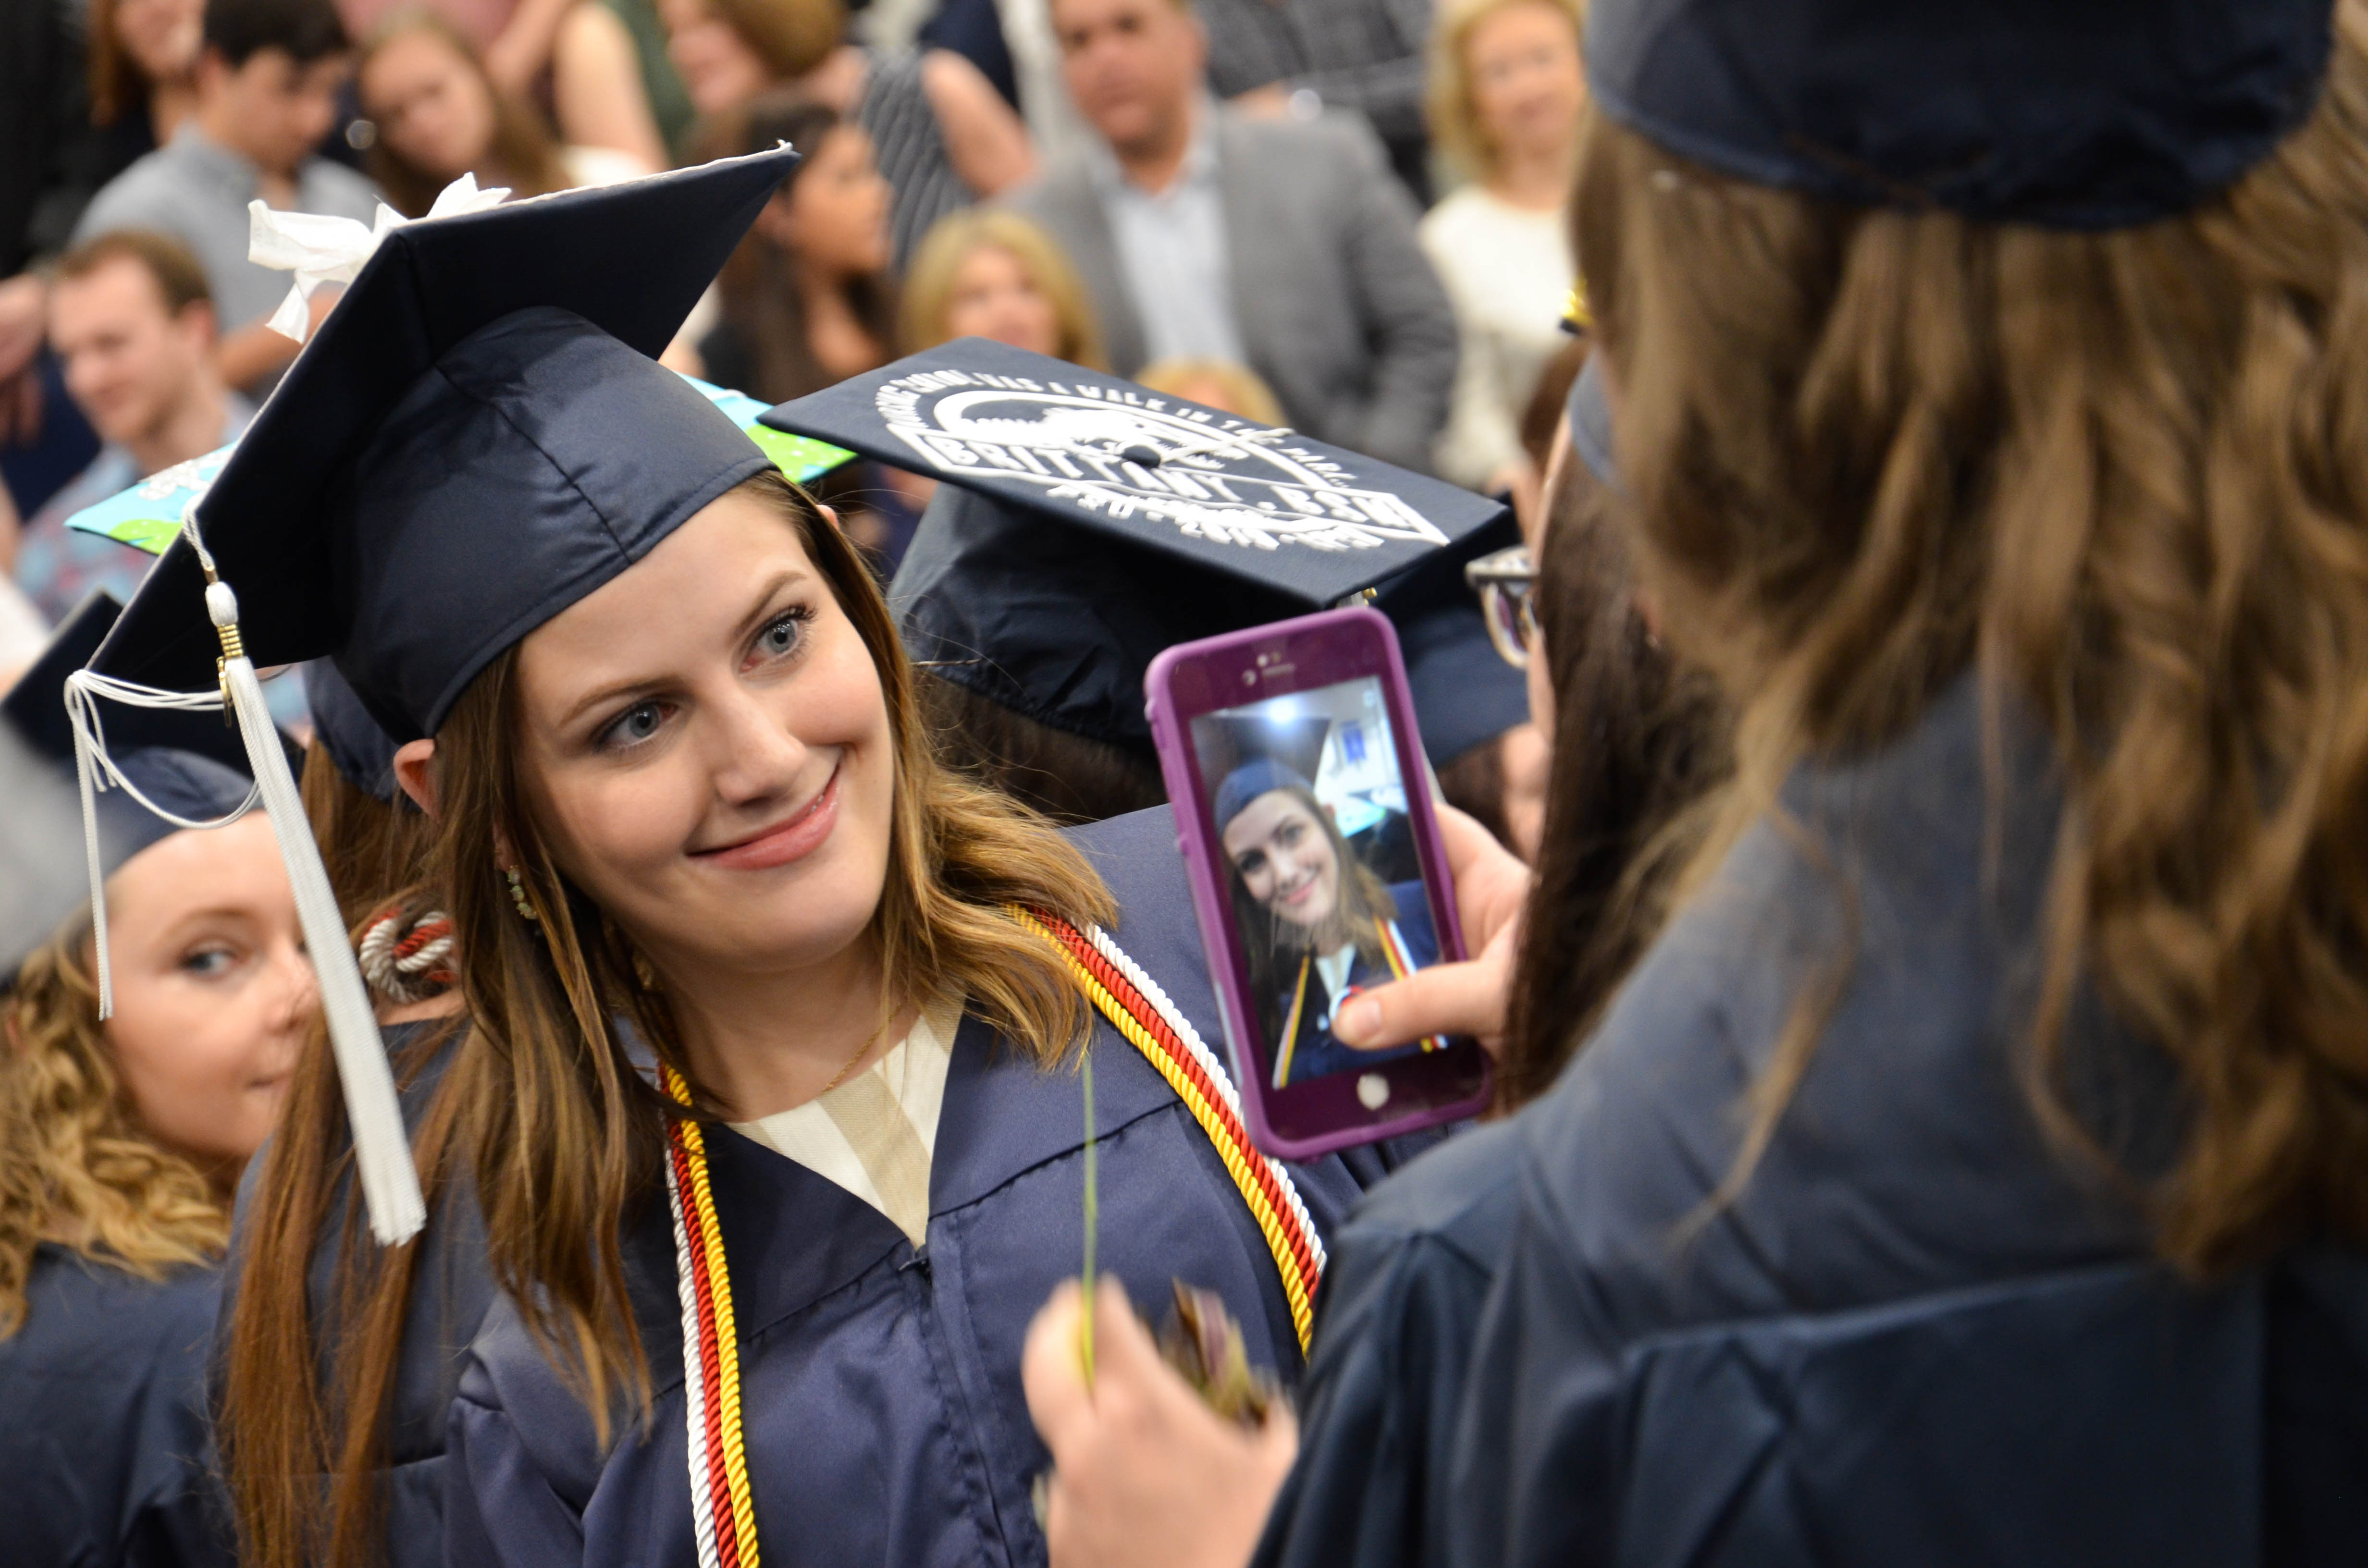 Penn State graduates walk across the stage throughout Pennsylvania